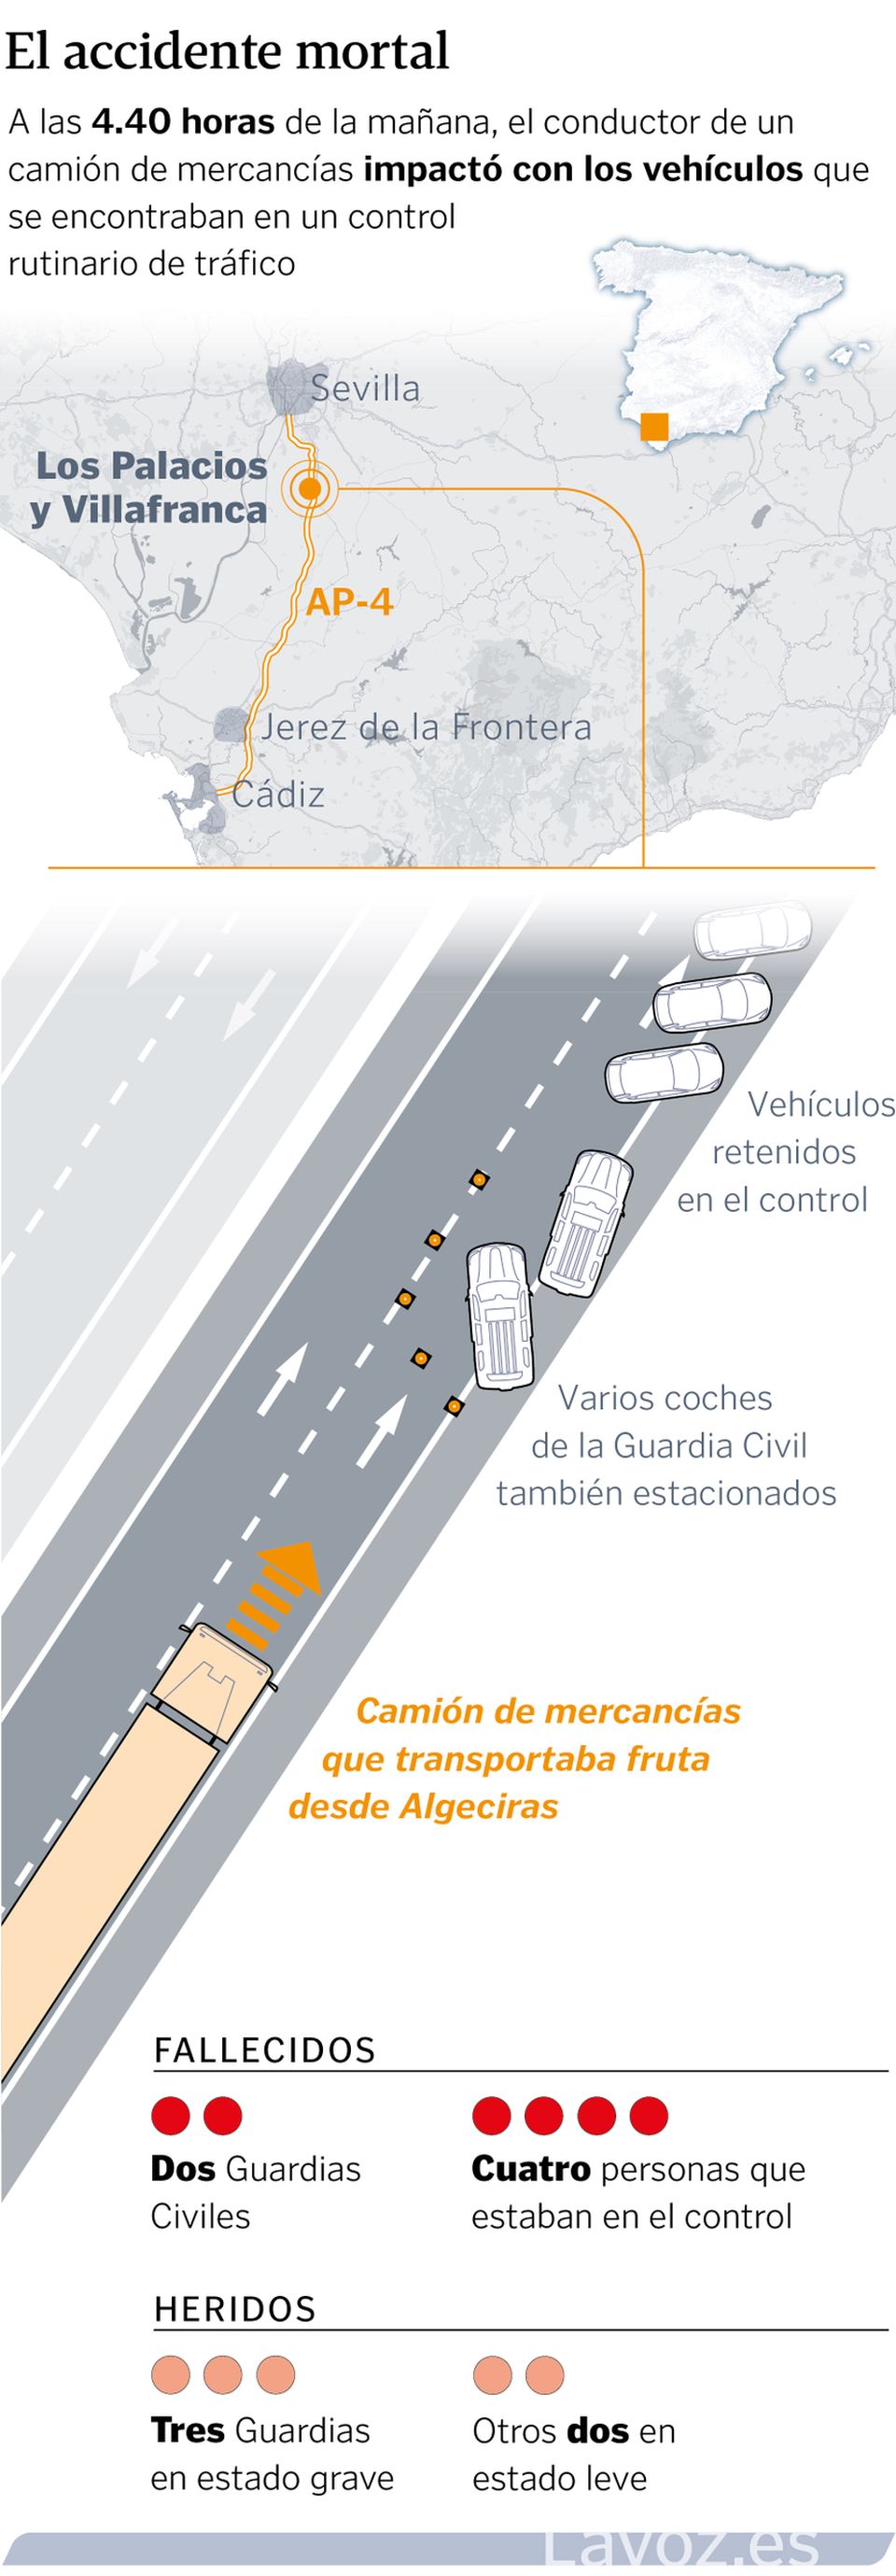 Representación del accidente en el que el conductor de un camión de mercancías impactó con los vehículos que se encontraban en un control rutinario de tráfico